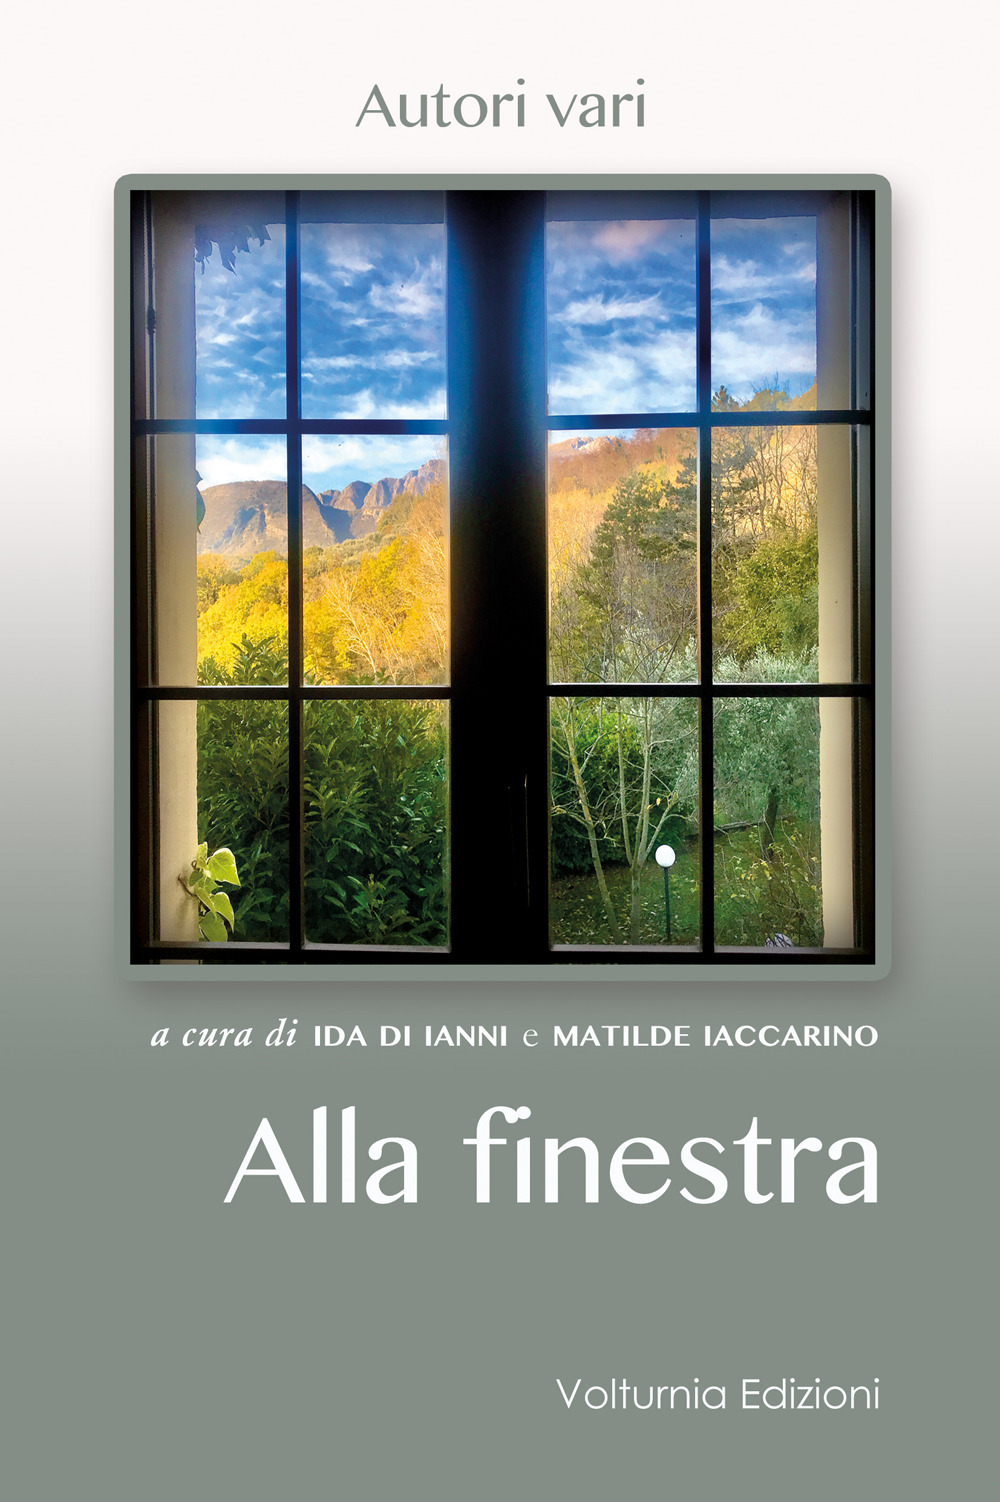 Image of Alla finestra